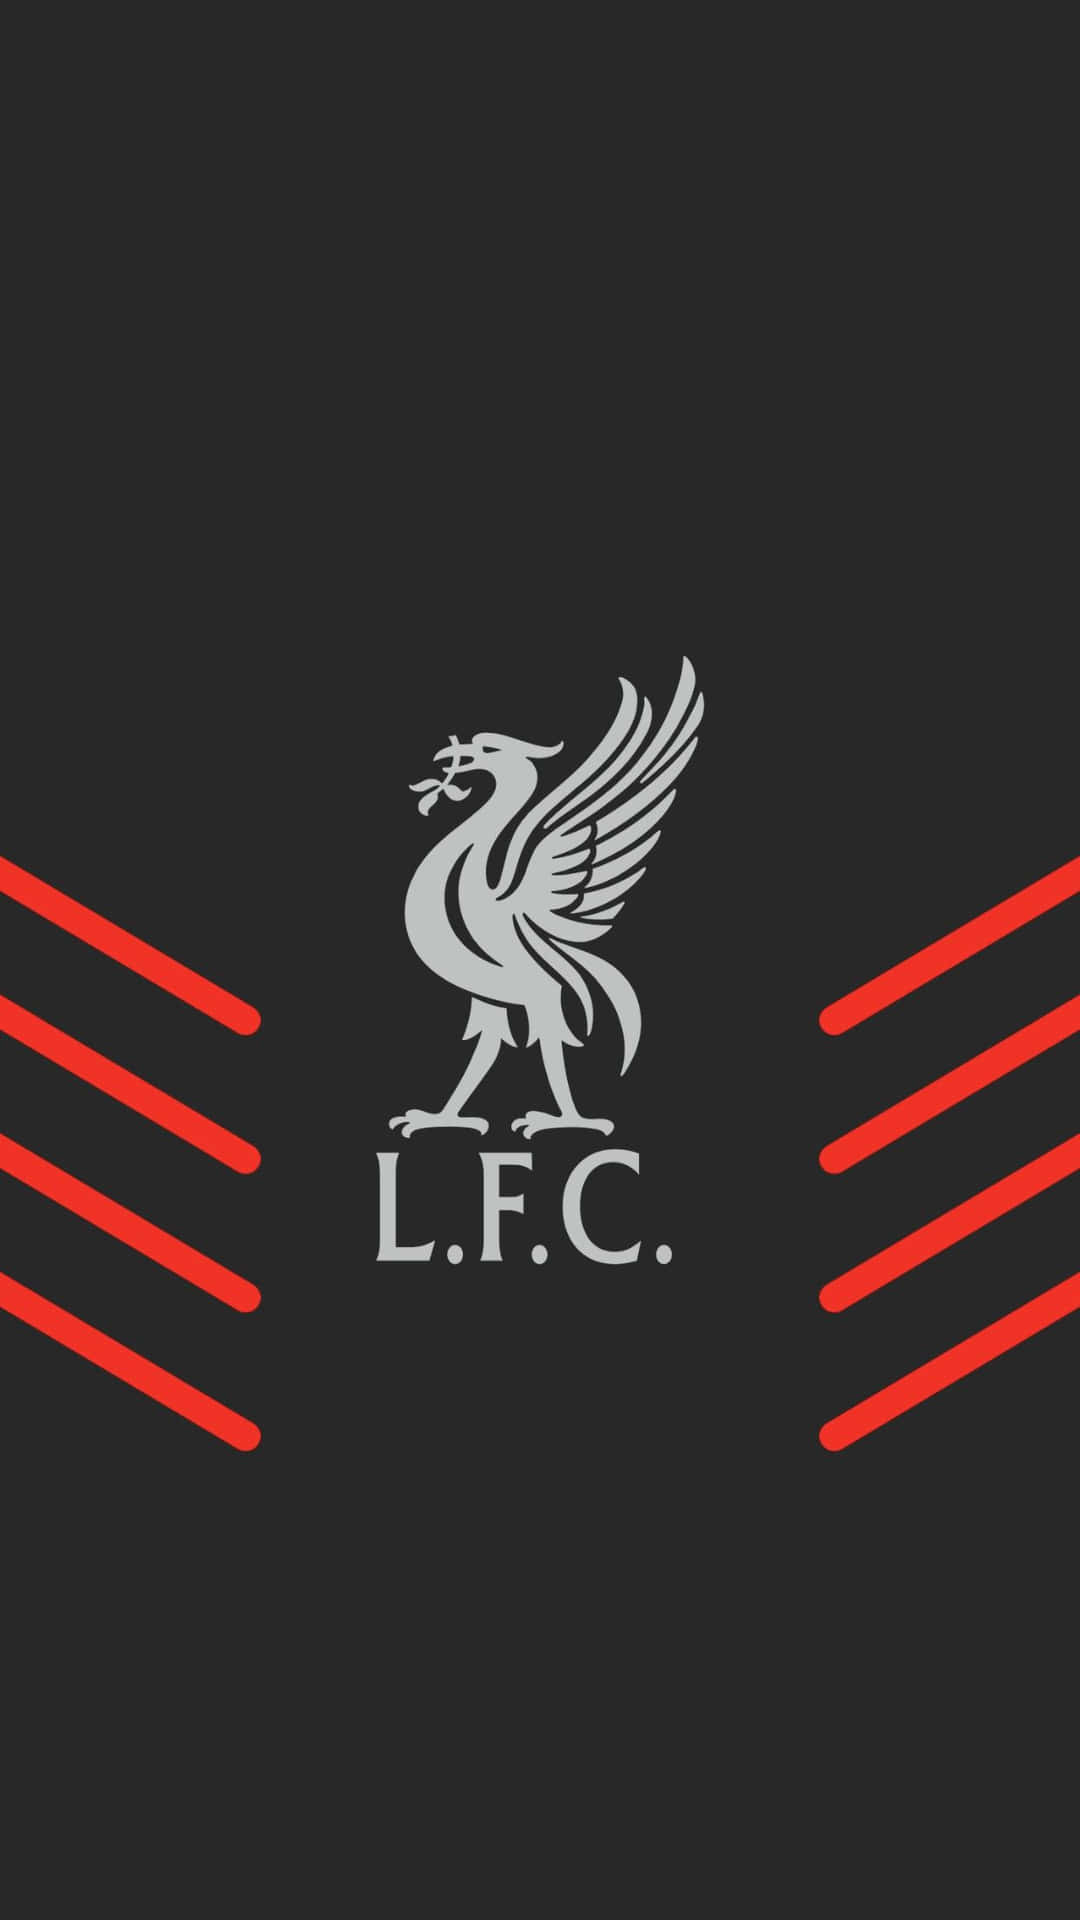 Ichliebe Das Neue Iphone Hintergrundbild Von Liverpool F.c. Wallpaper